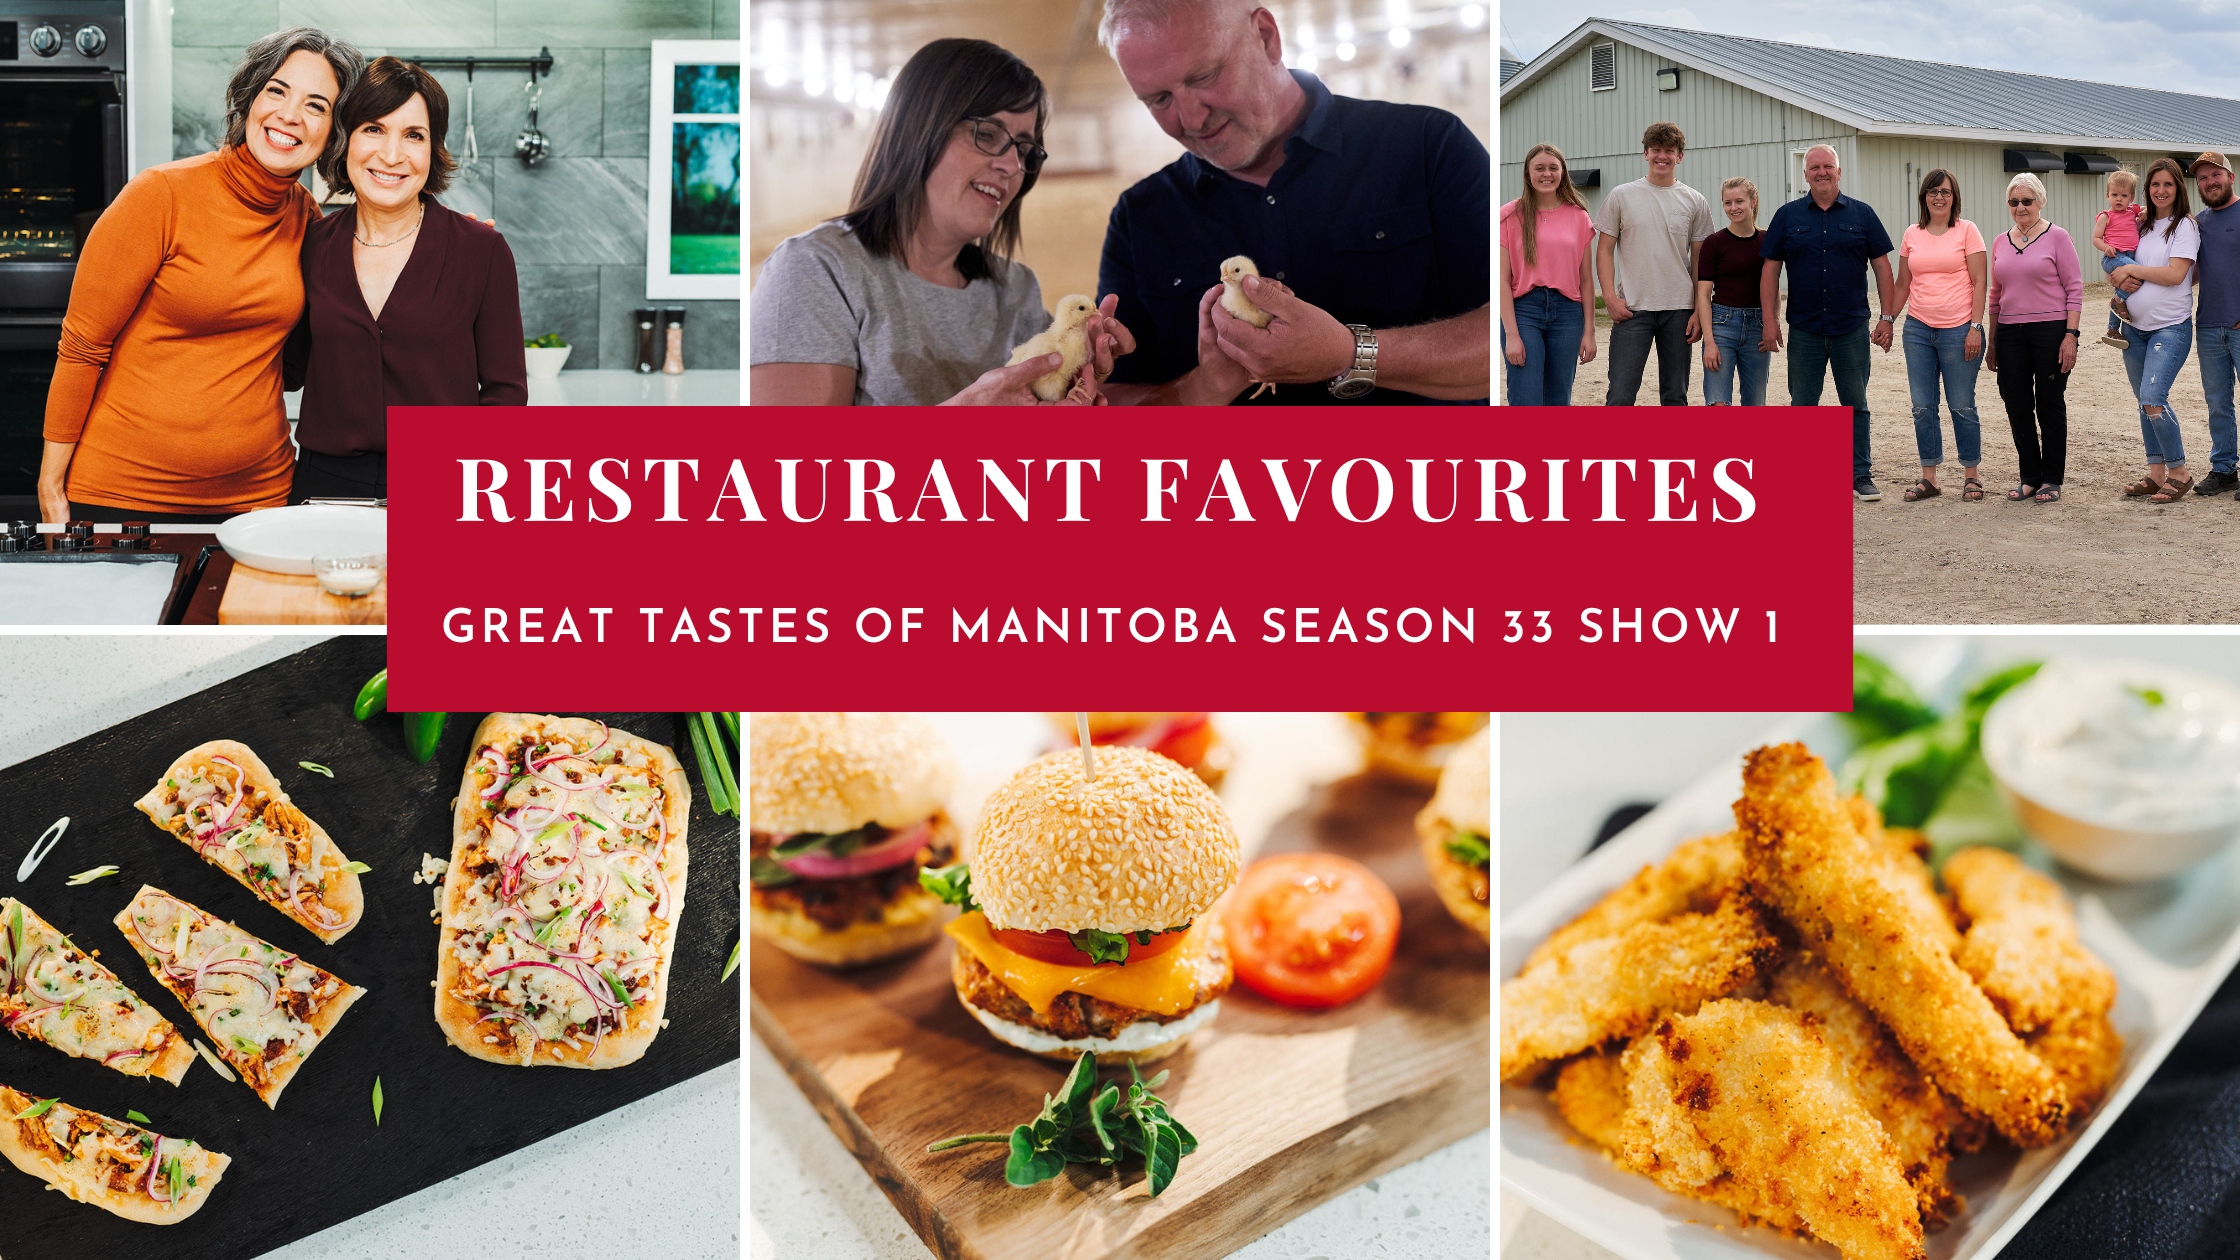 Great Tastes of Manitoba Season 33 Show 1: Restaurant Favourites